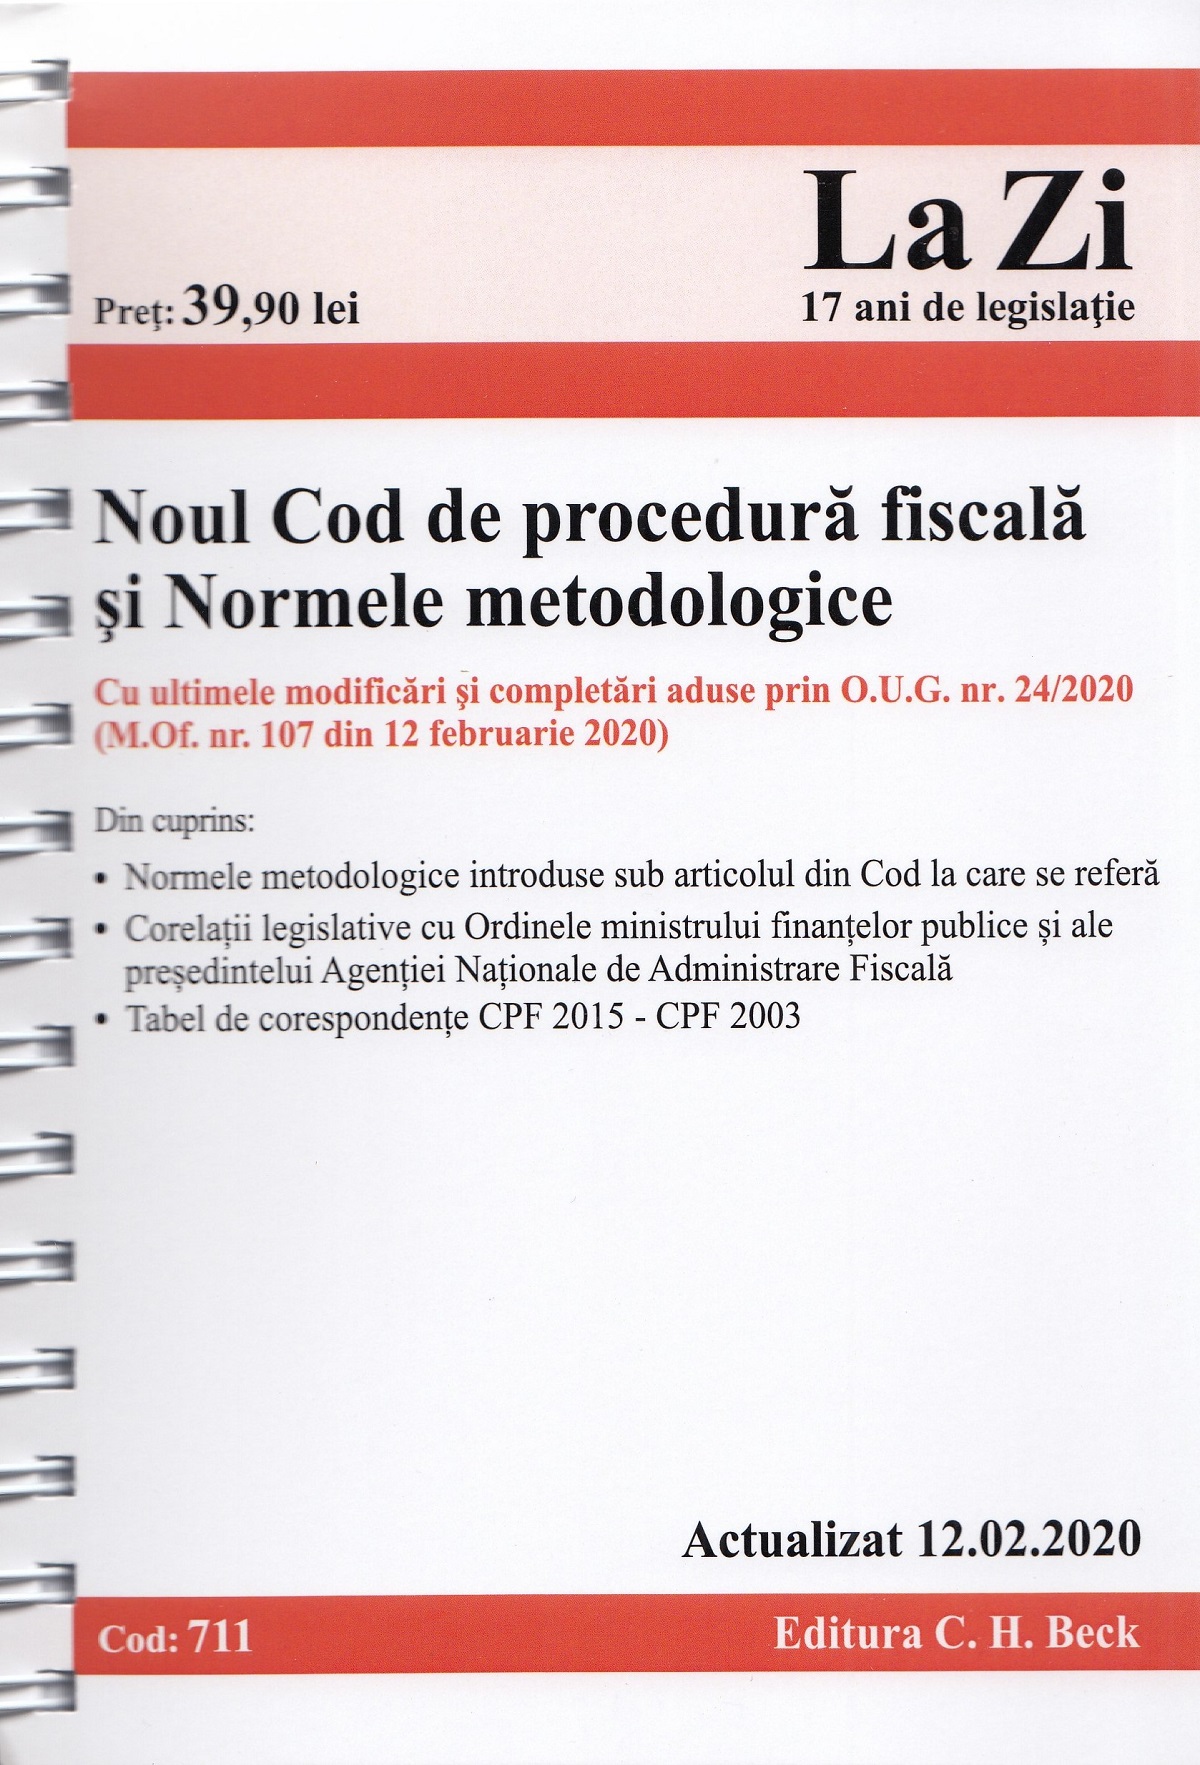 Noul cod de procedura fiscala si normele metodologice Act.12.02.2020